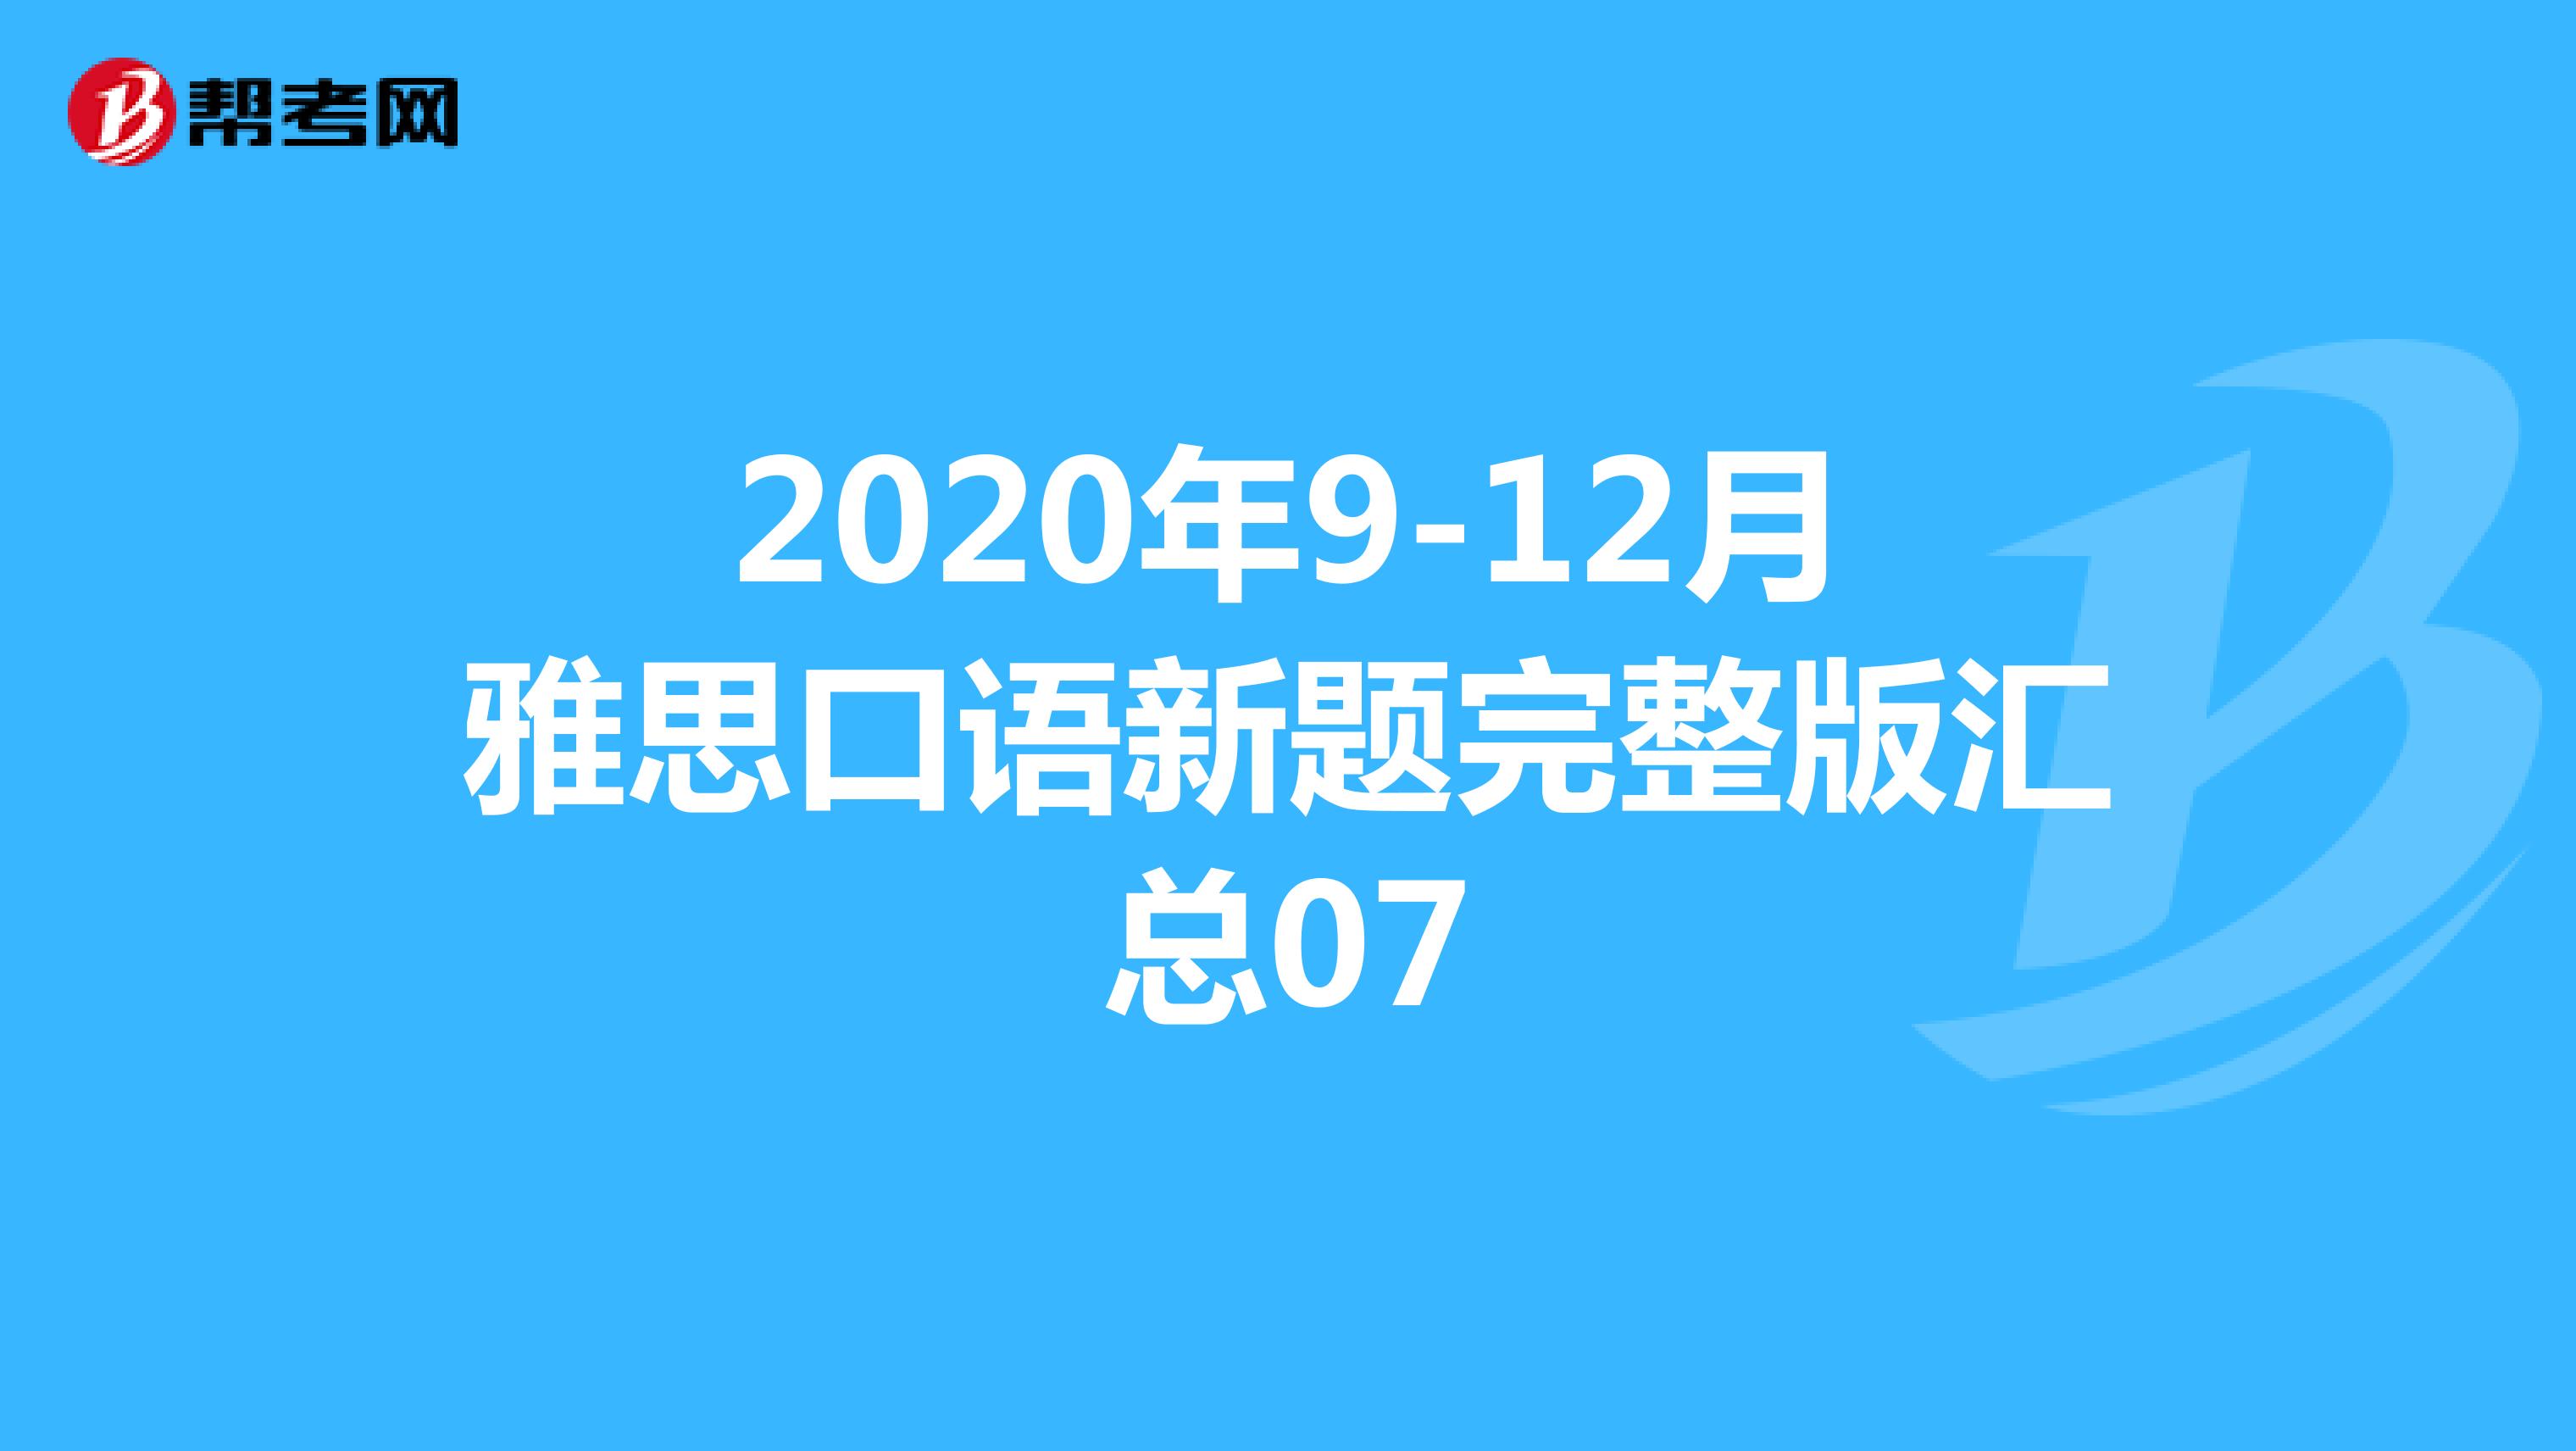 2020年9-12月雅思口语新题完整版汇总07